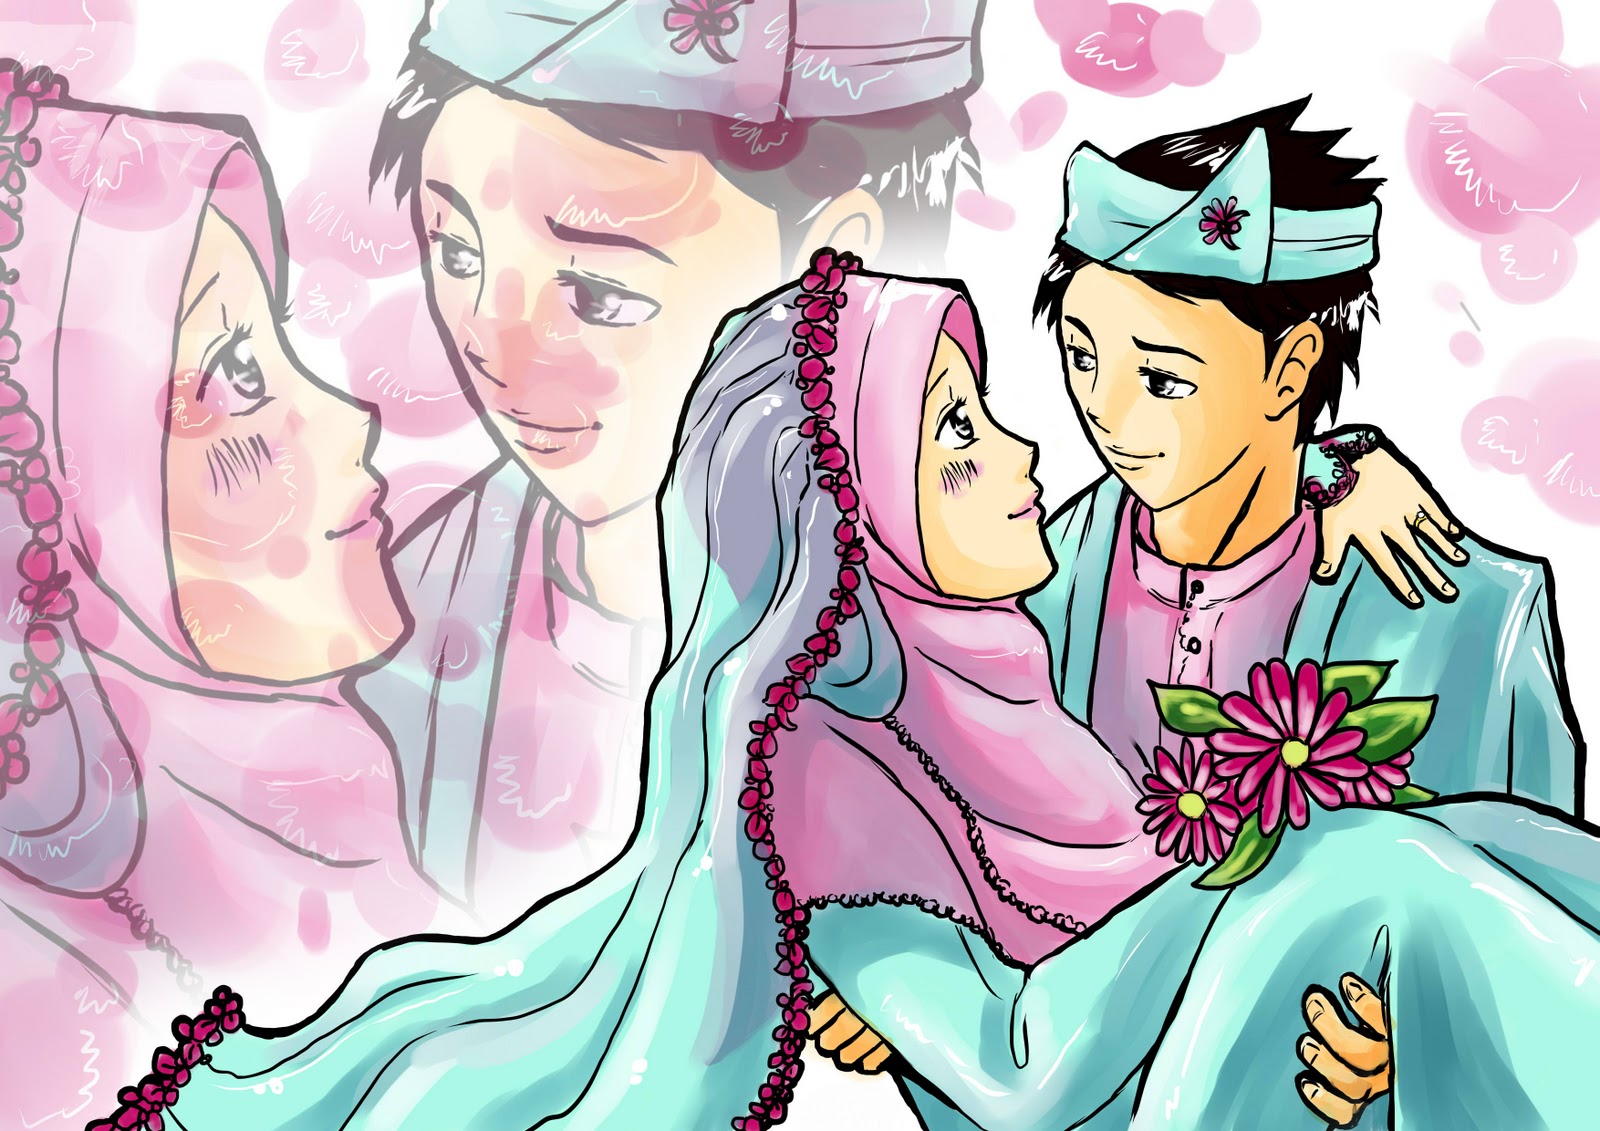 Komik Dakwah Cinta Pada Wallpaper Muslimah Drawing Married Muslim